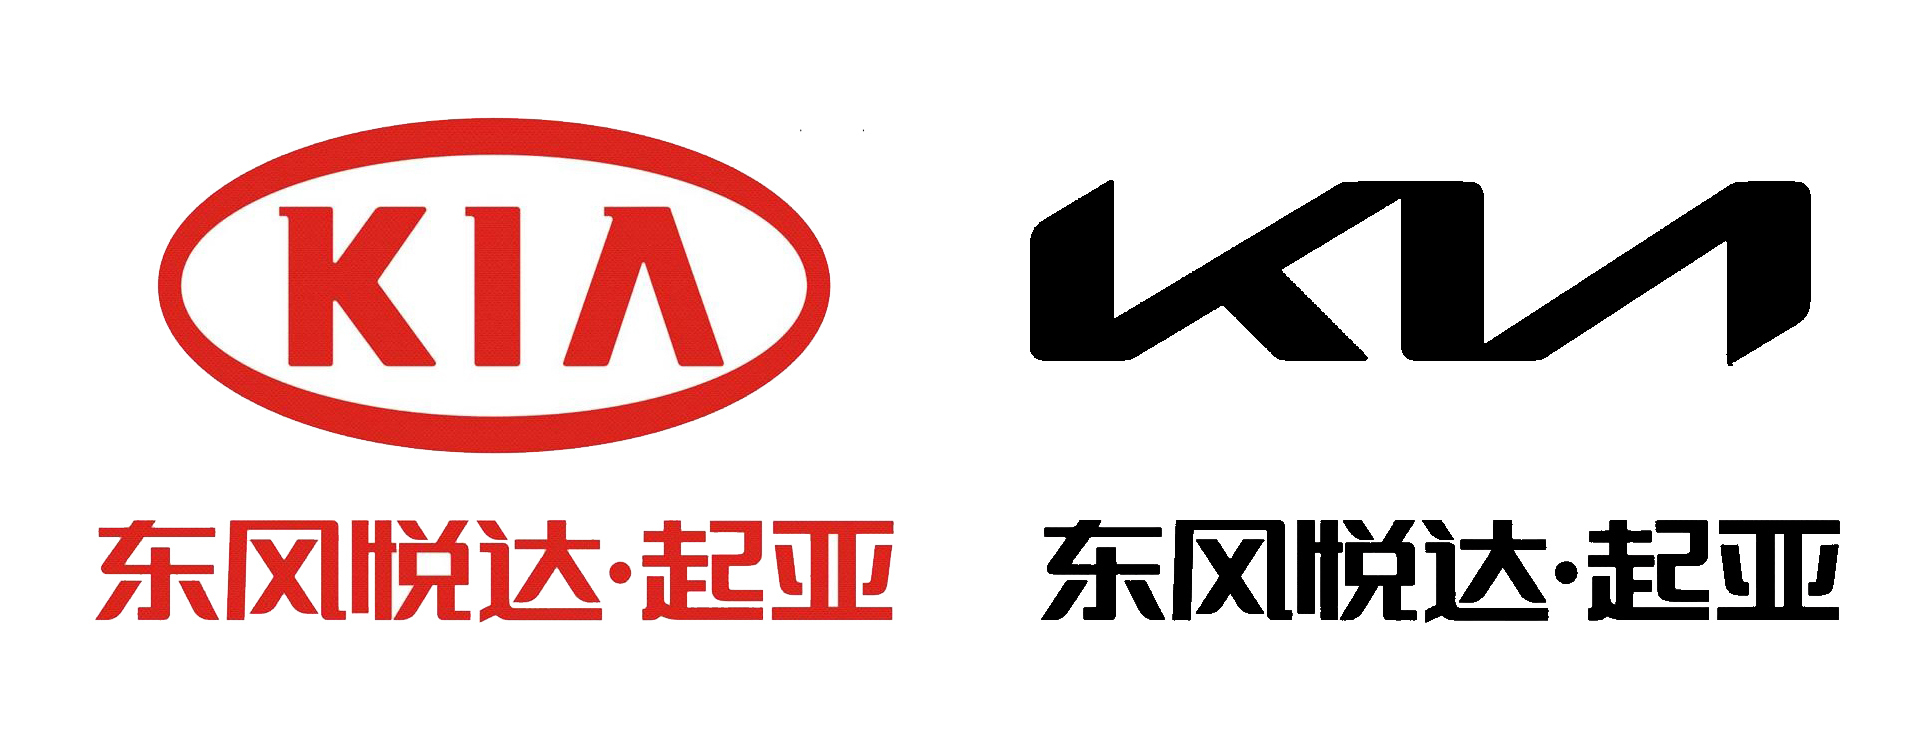 我们看一下东风悦达起亚的新旧logo对比,除了文字的形态变化,最明显